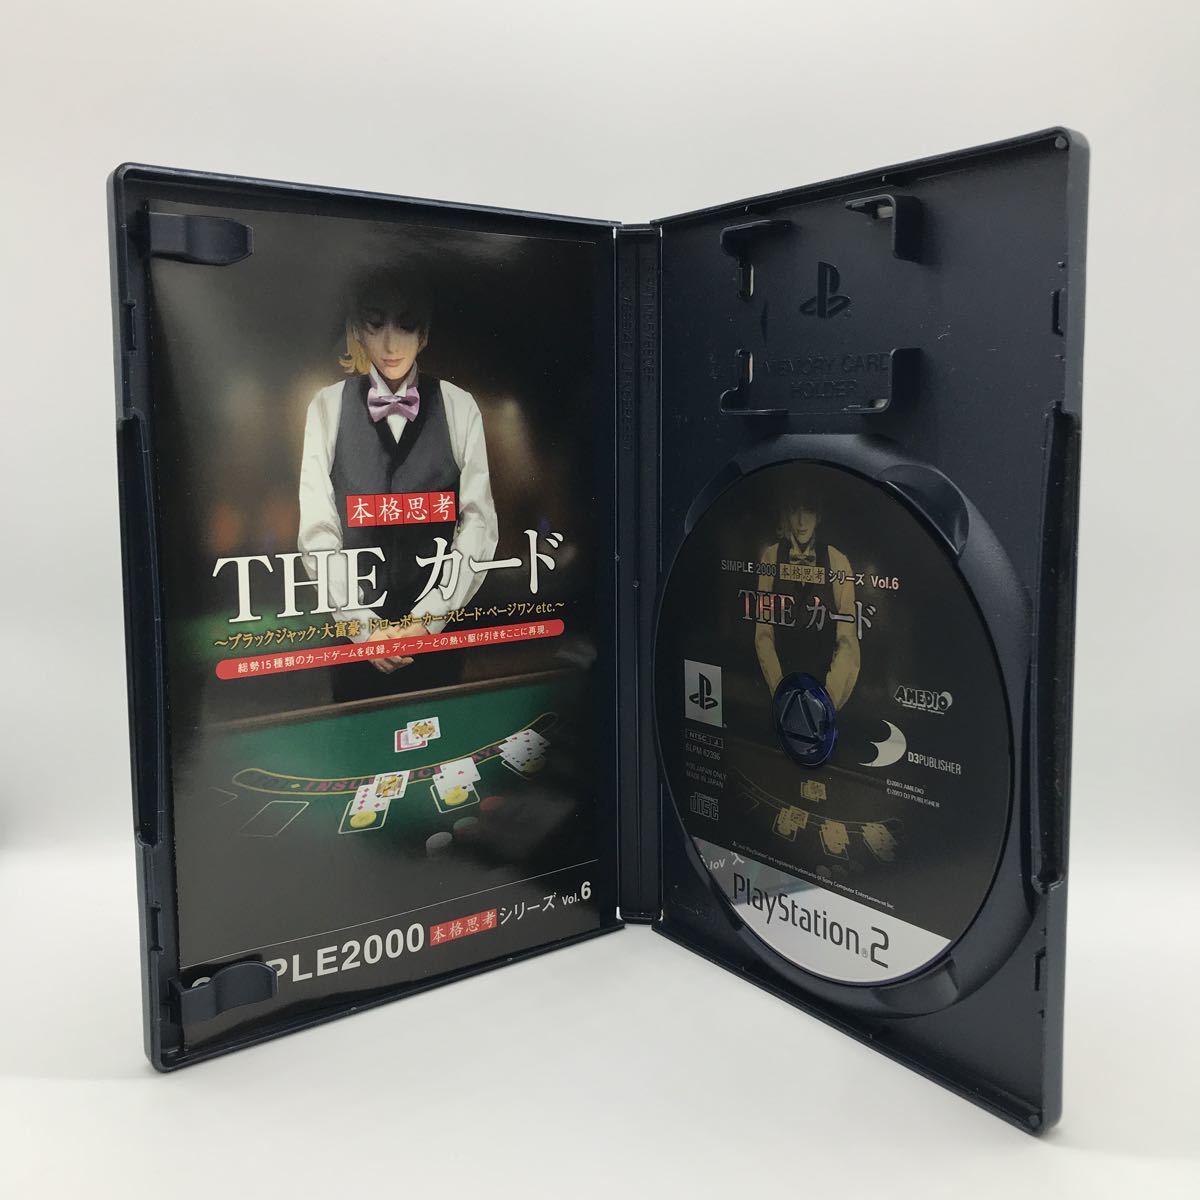 SIMPLE2000本格思考シリーズ Vol.6 THE カード ブラックジャック 大富豪 ドローポーカー スピード ペー ジワンetc プレイステーション2 PS2